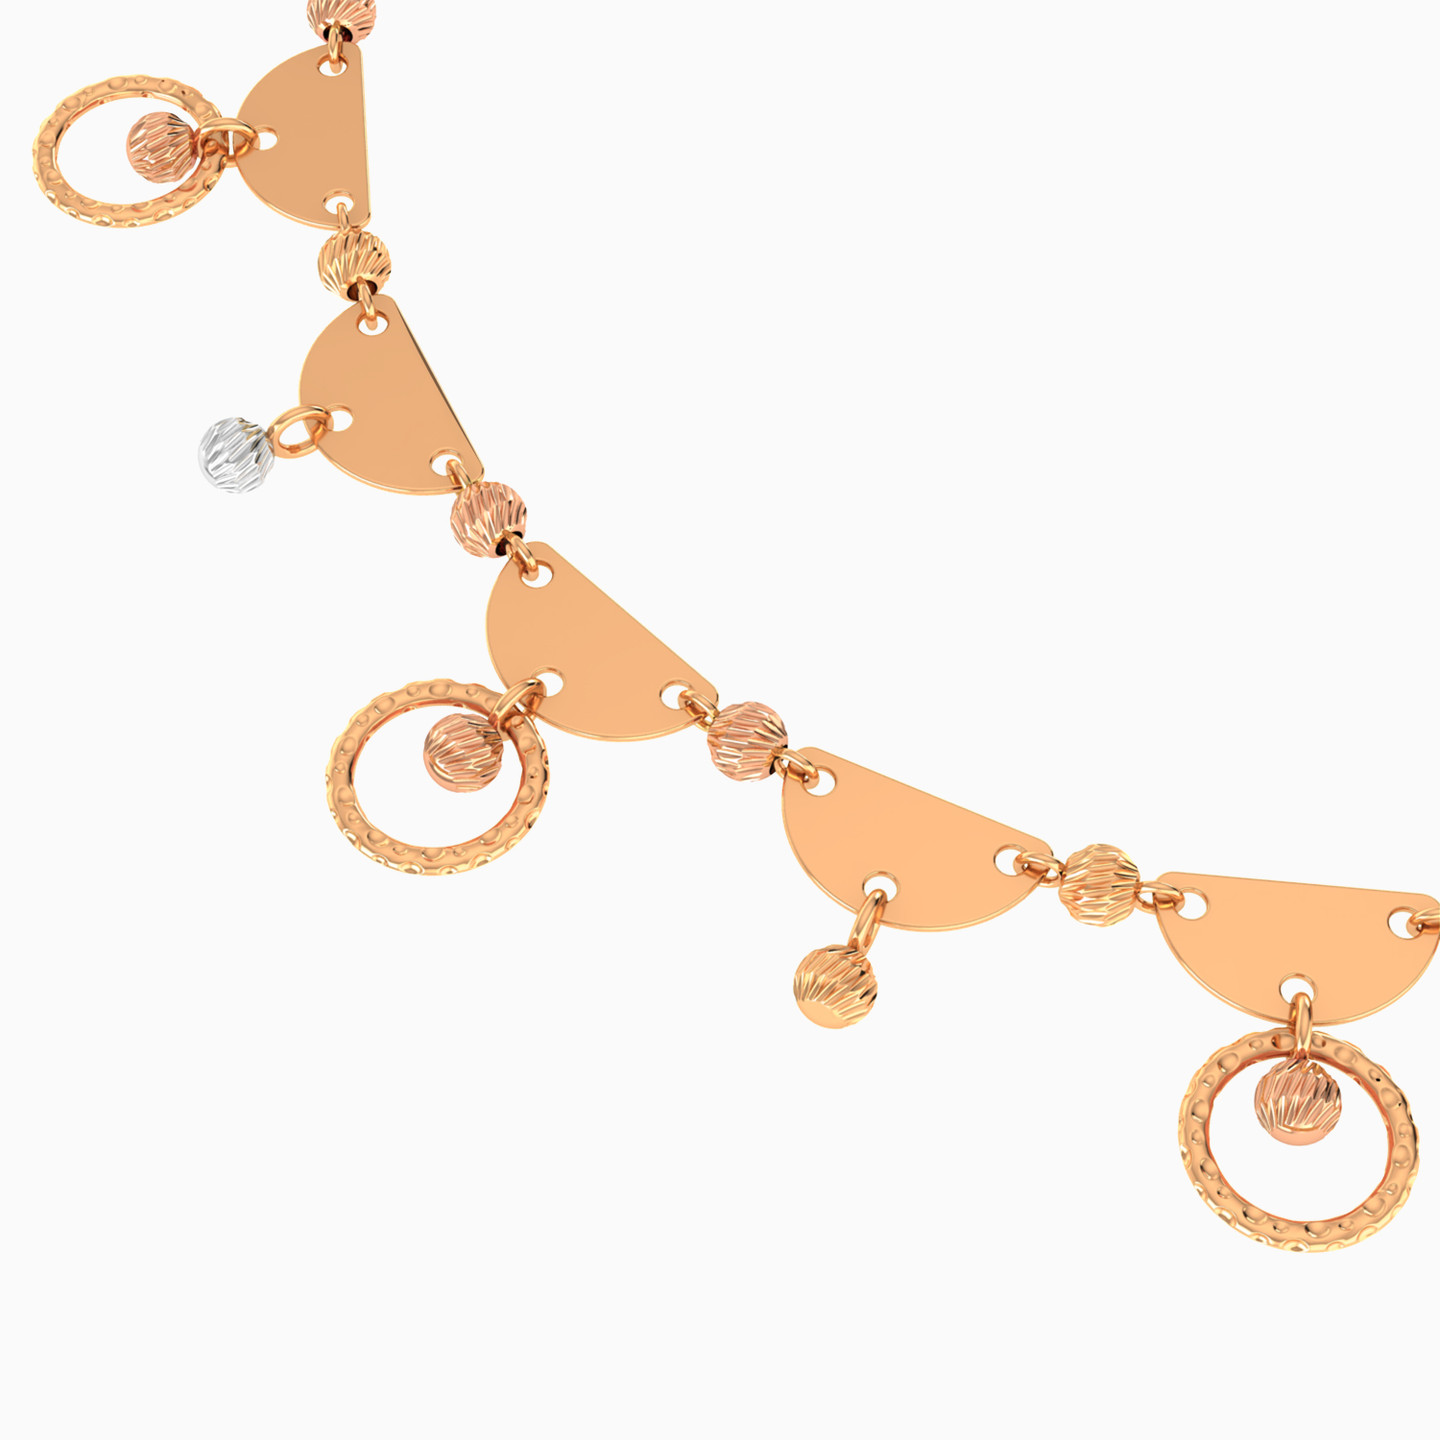 21K Gold Chain Bracelet - 3